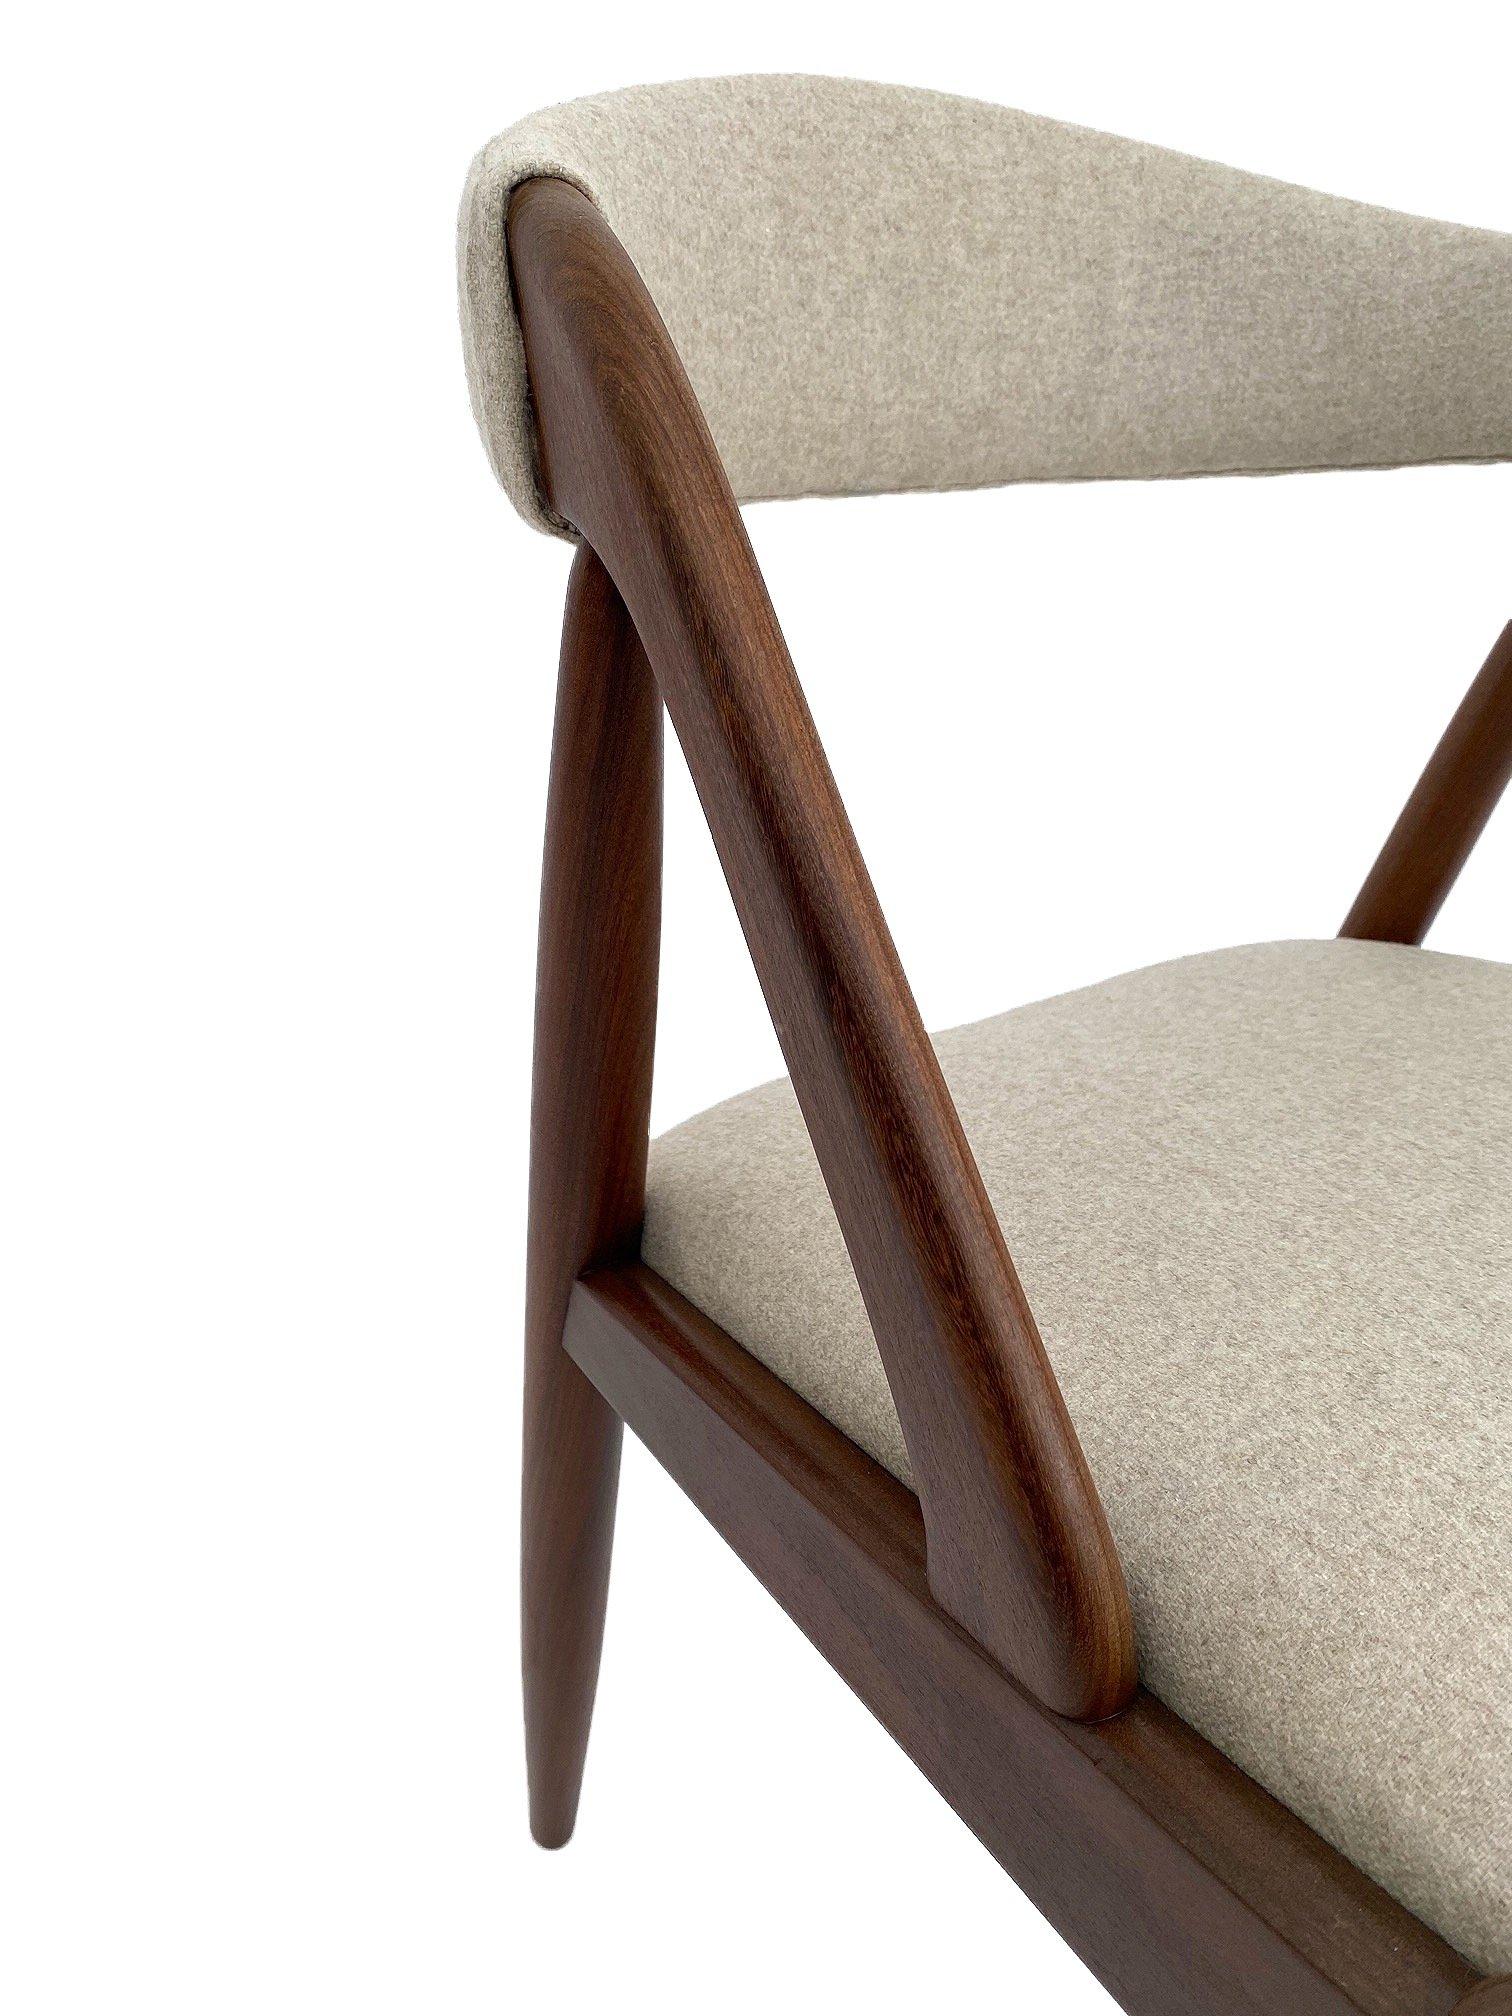 Kai Kristiansen Model 31 for Shou Andersen Teak and Cream Wool Desk Chair 8